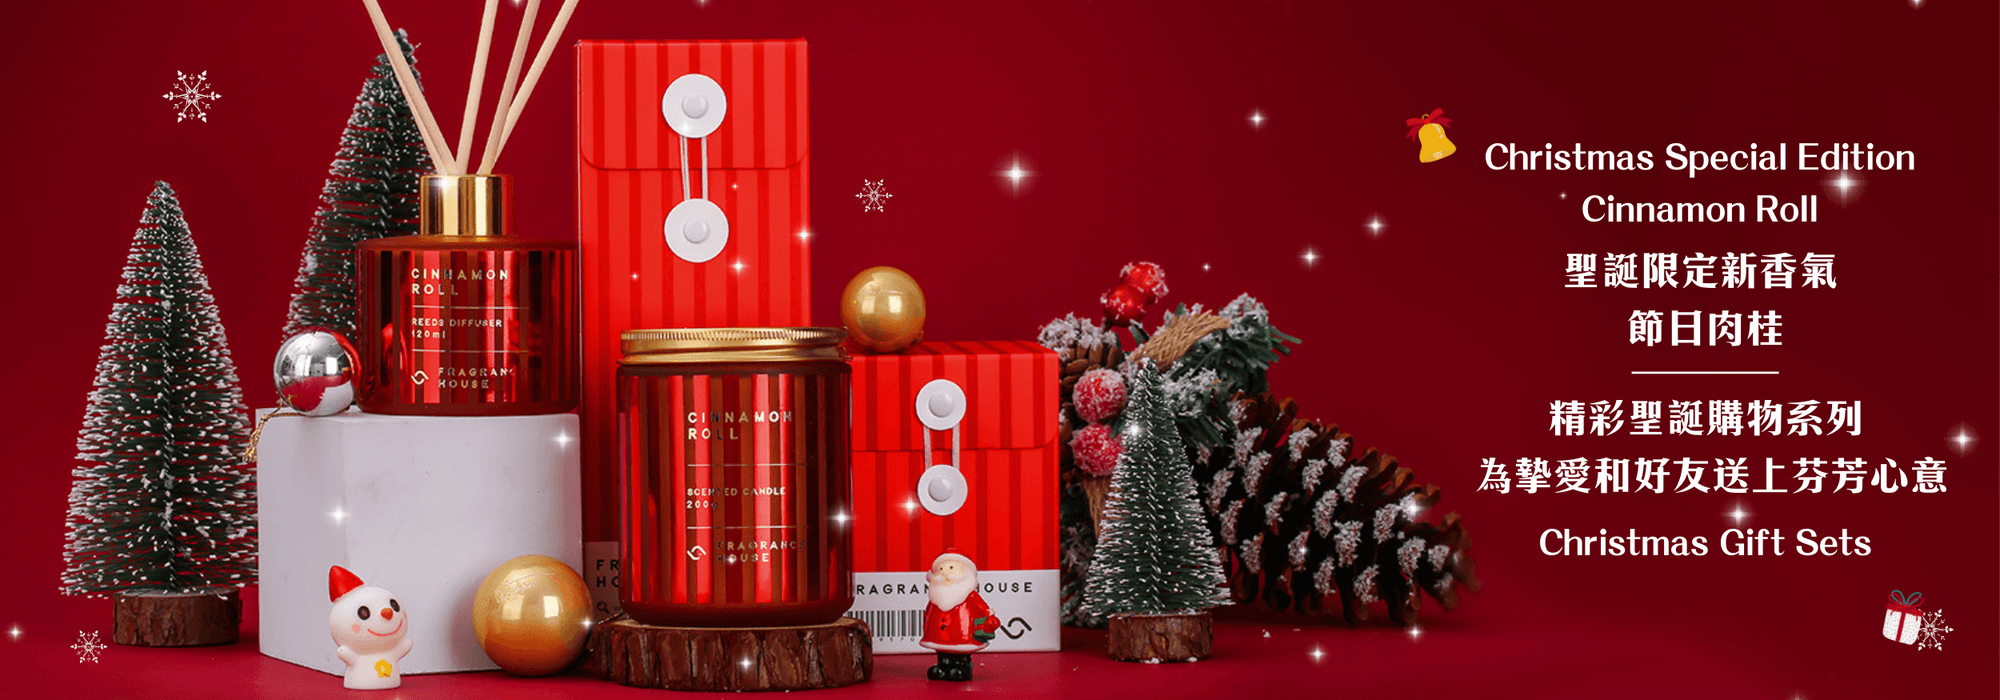 Fragrance House 聖誕限定「節日肉桂」出爐🎄 | 精彩聖誕購物系列 - Fragrance House HK